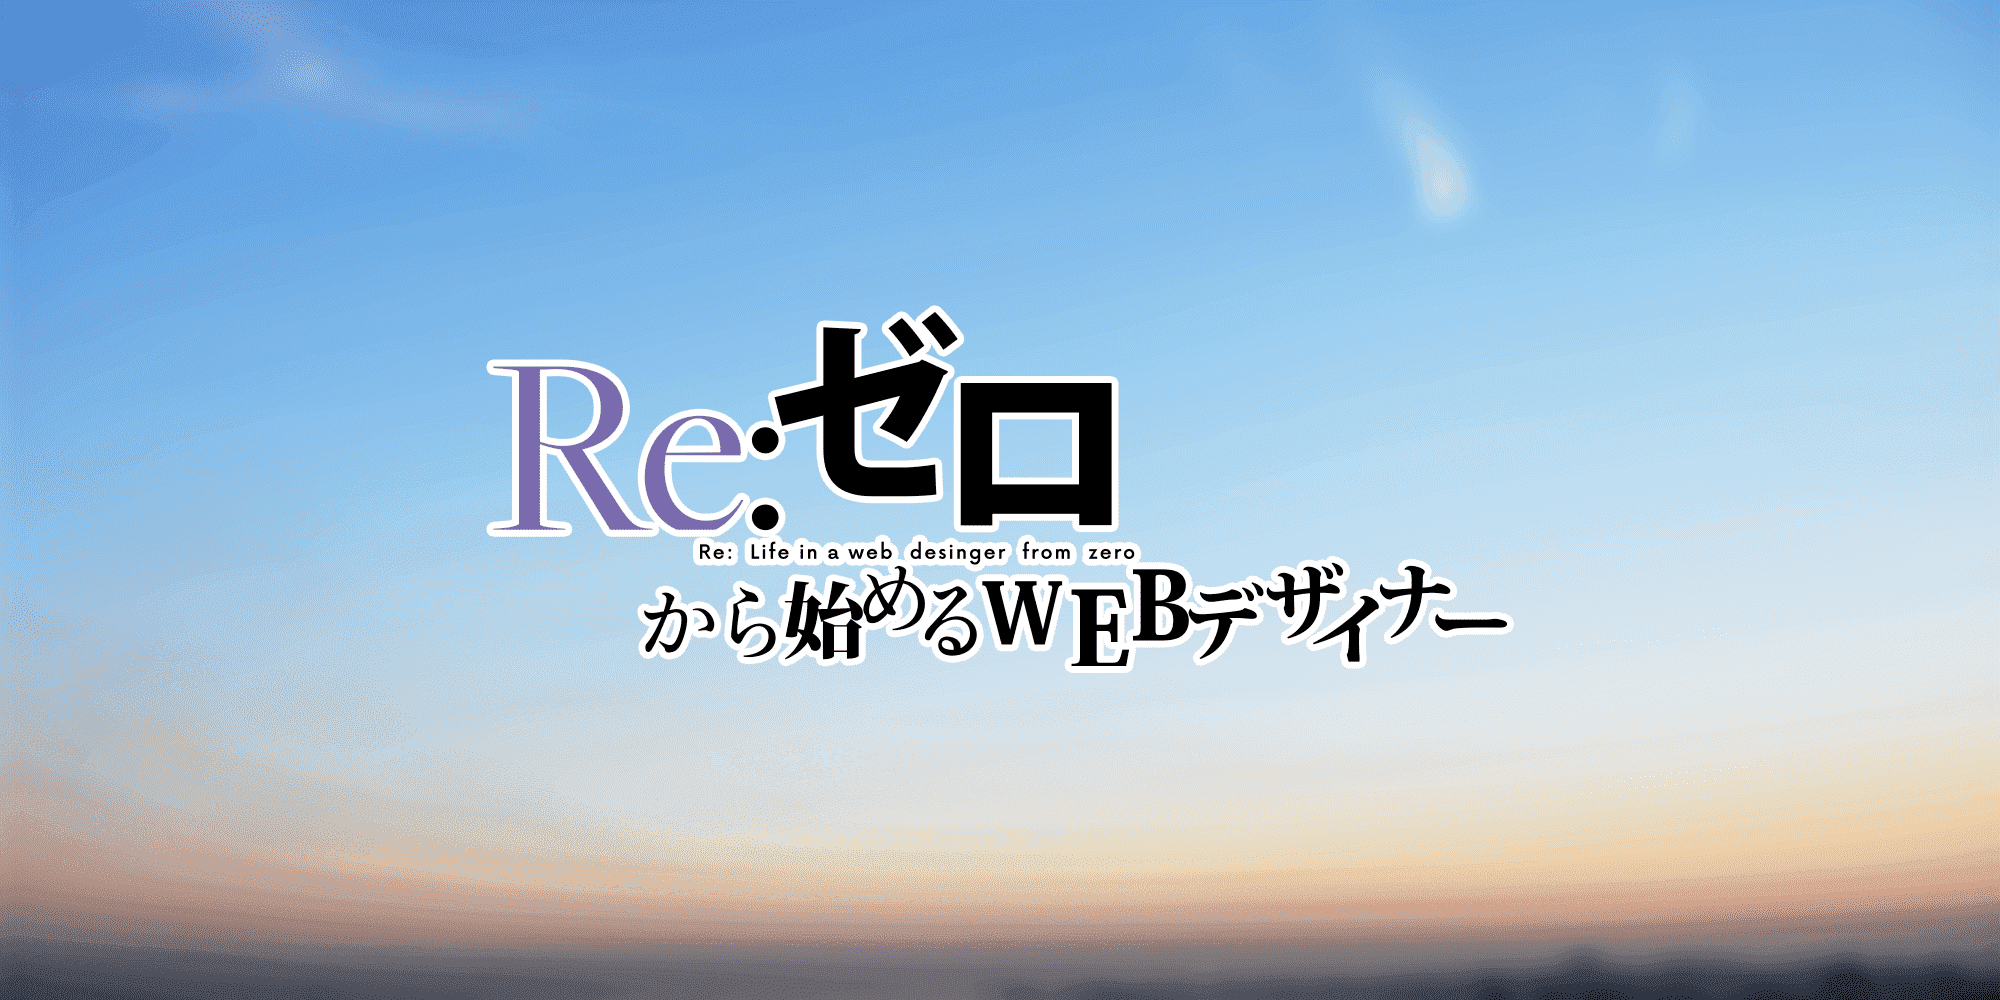 rezero-2